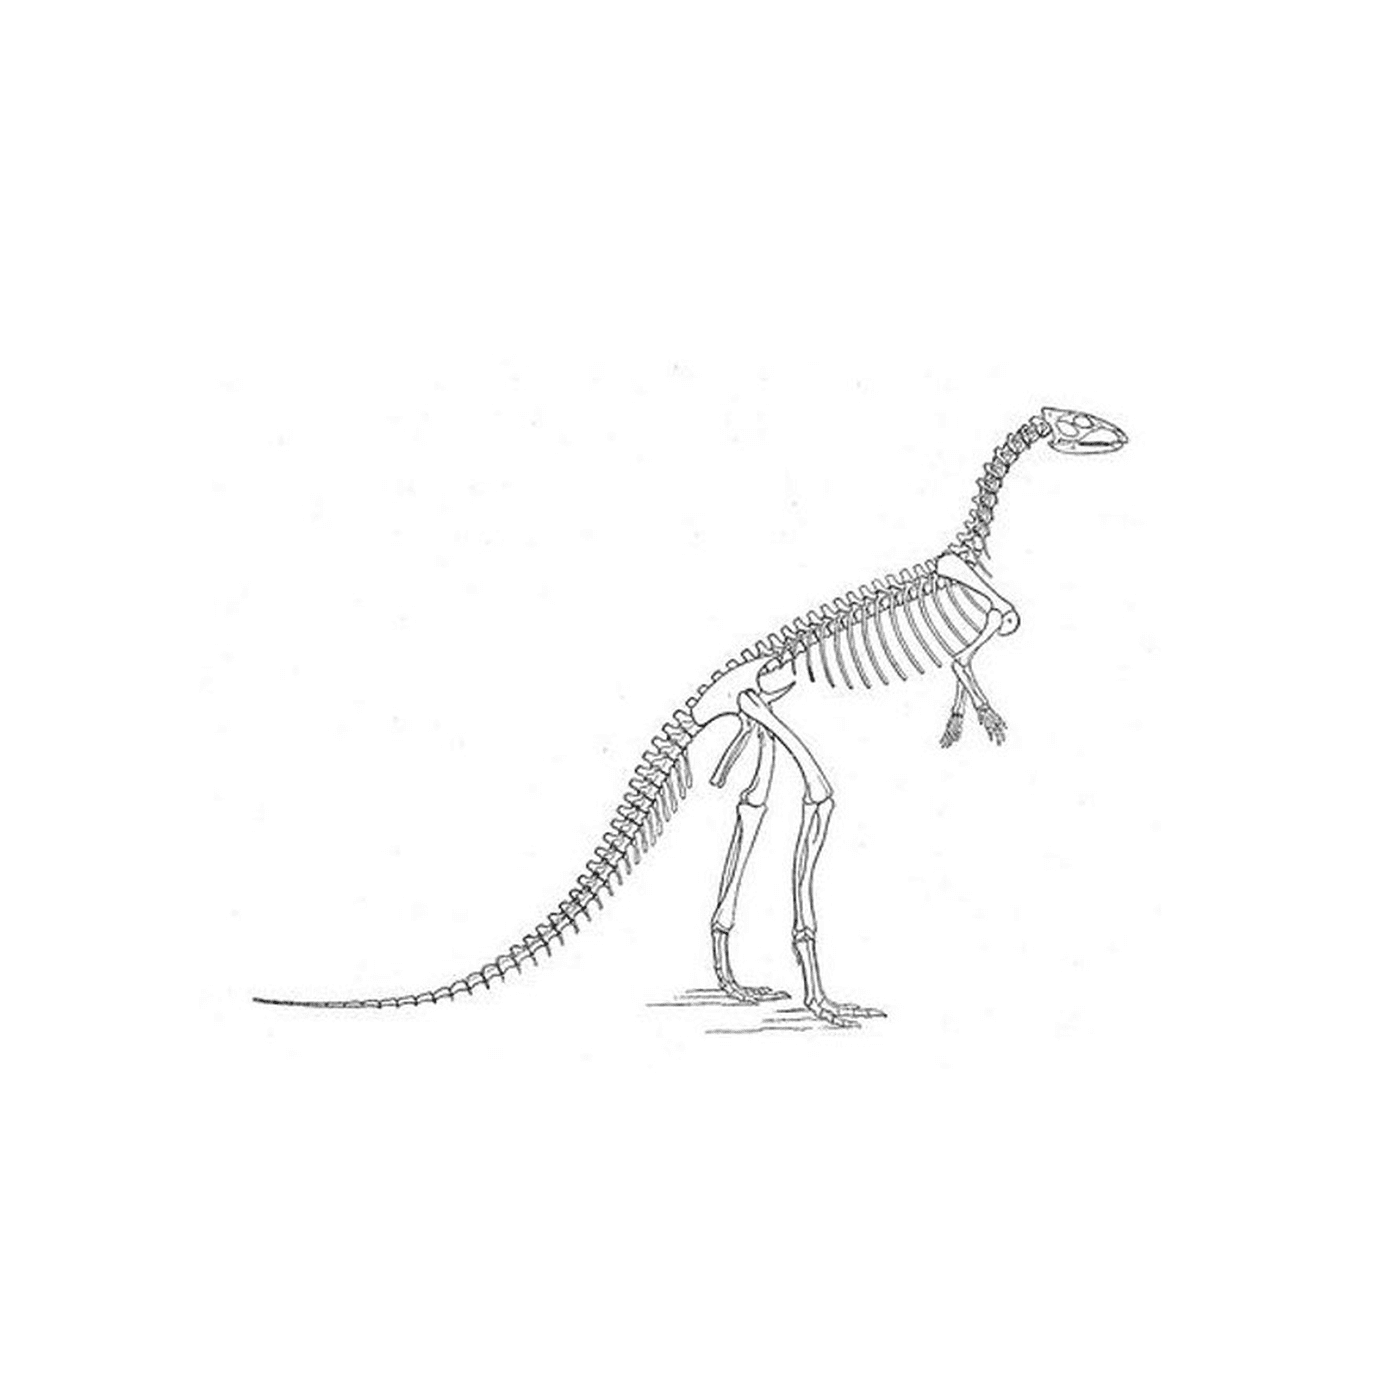  Un esqueleto de dinosaurio 